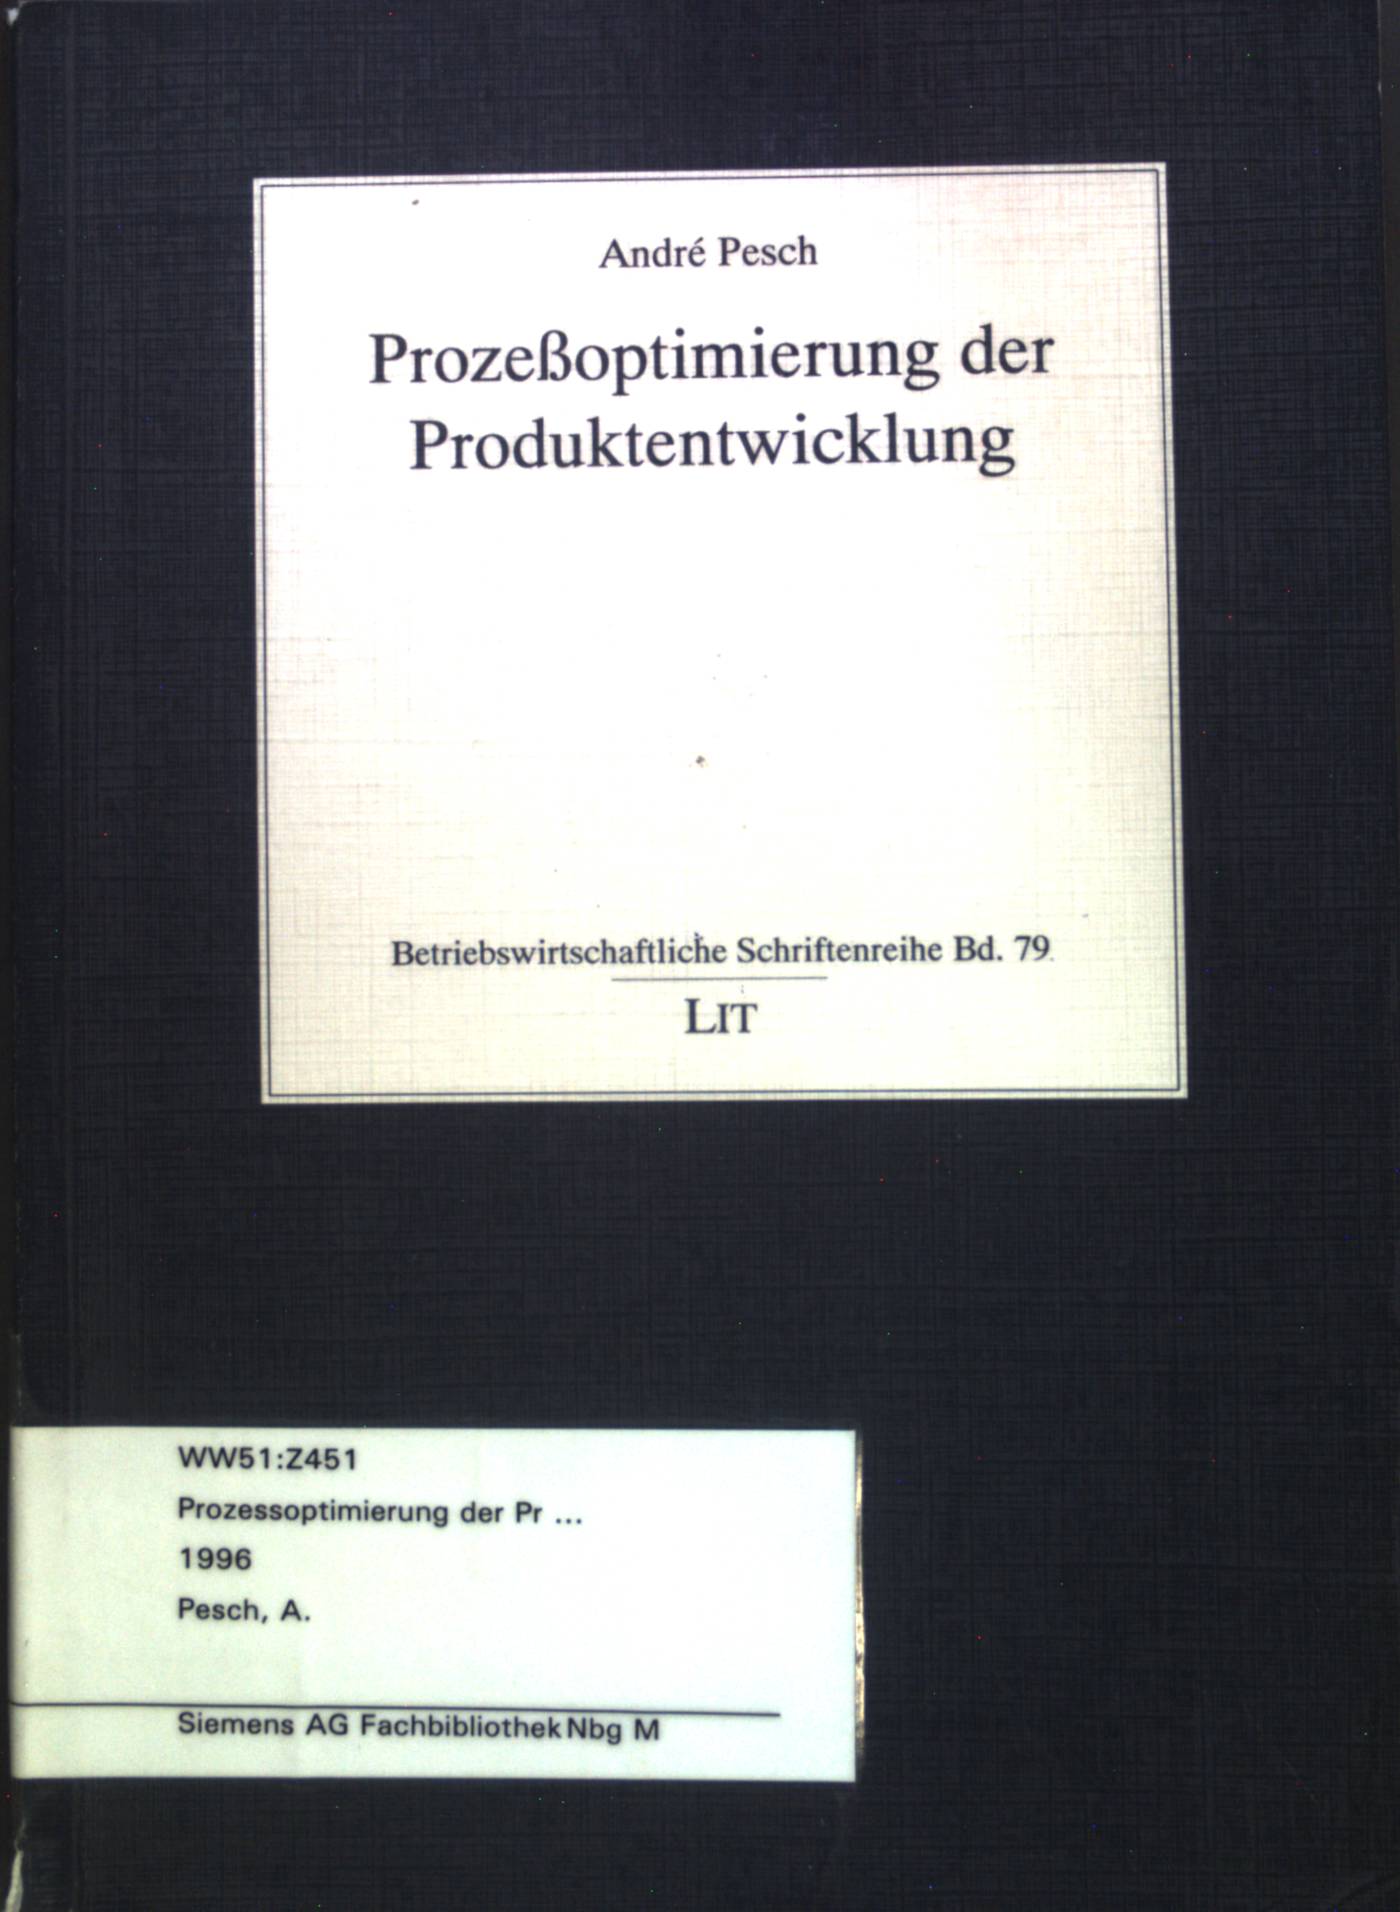 Prozeßoptimierung der Produktentwicklung. Betriebswirtschaftliche Schriftenreihe; Band 79.